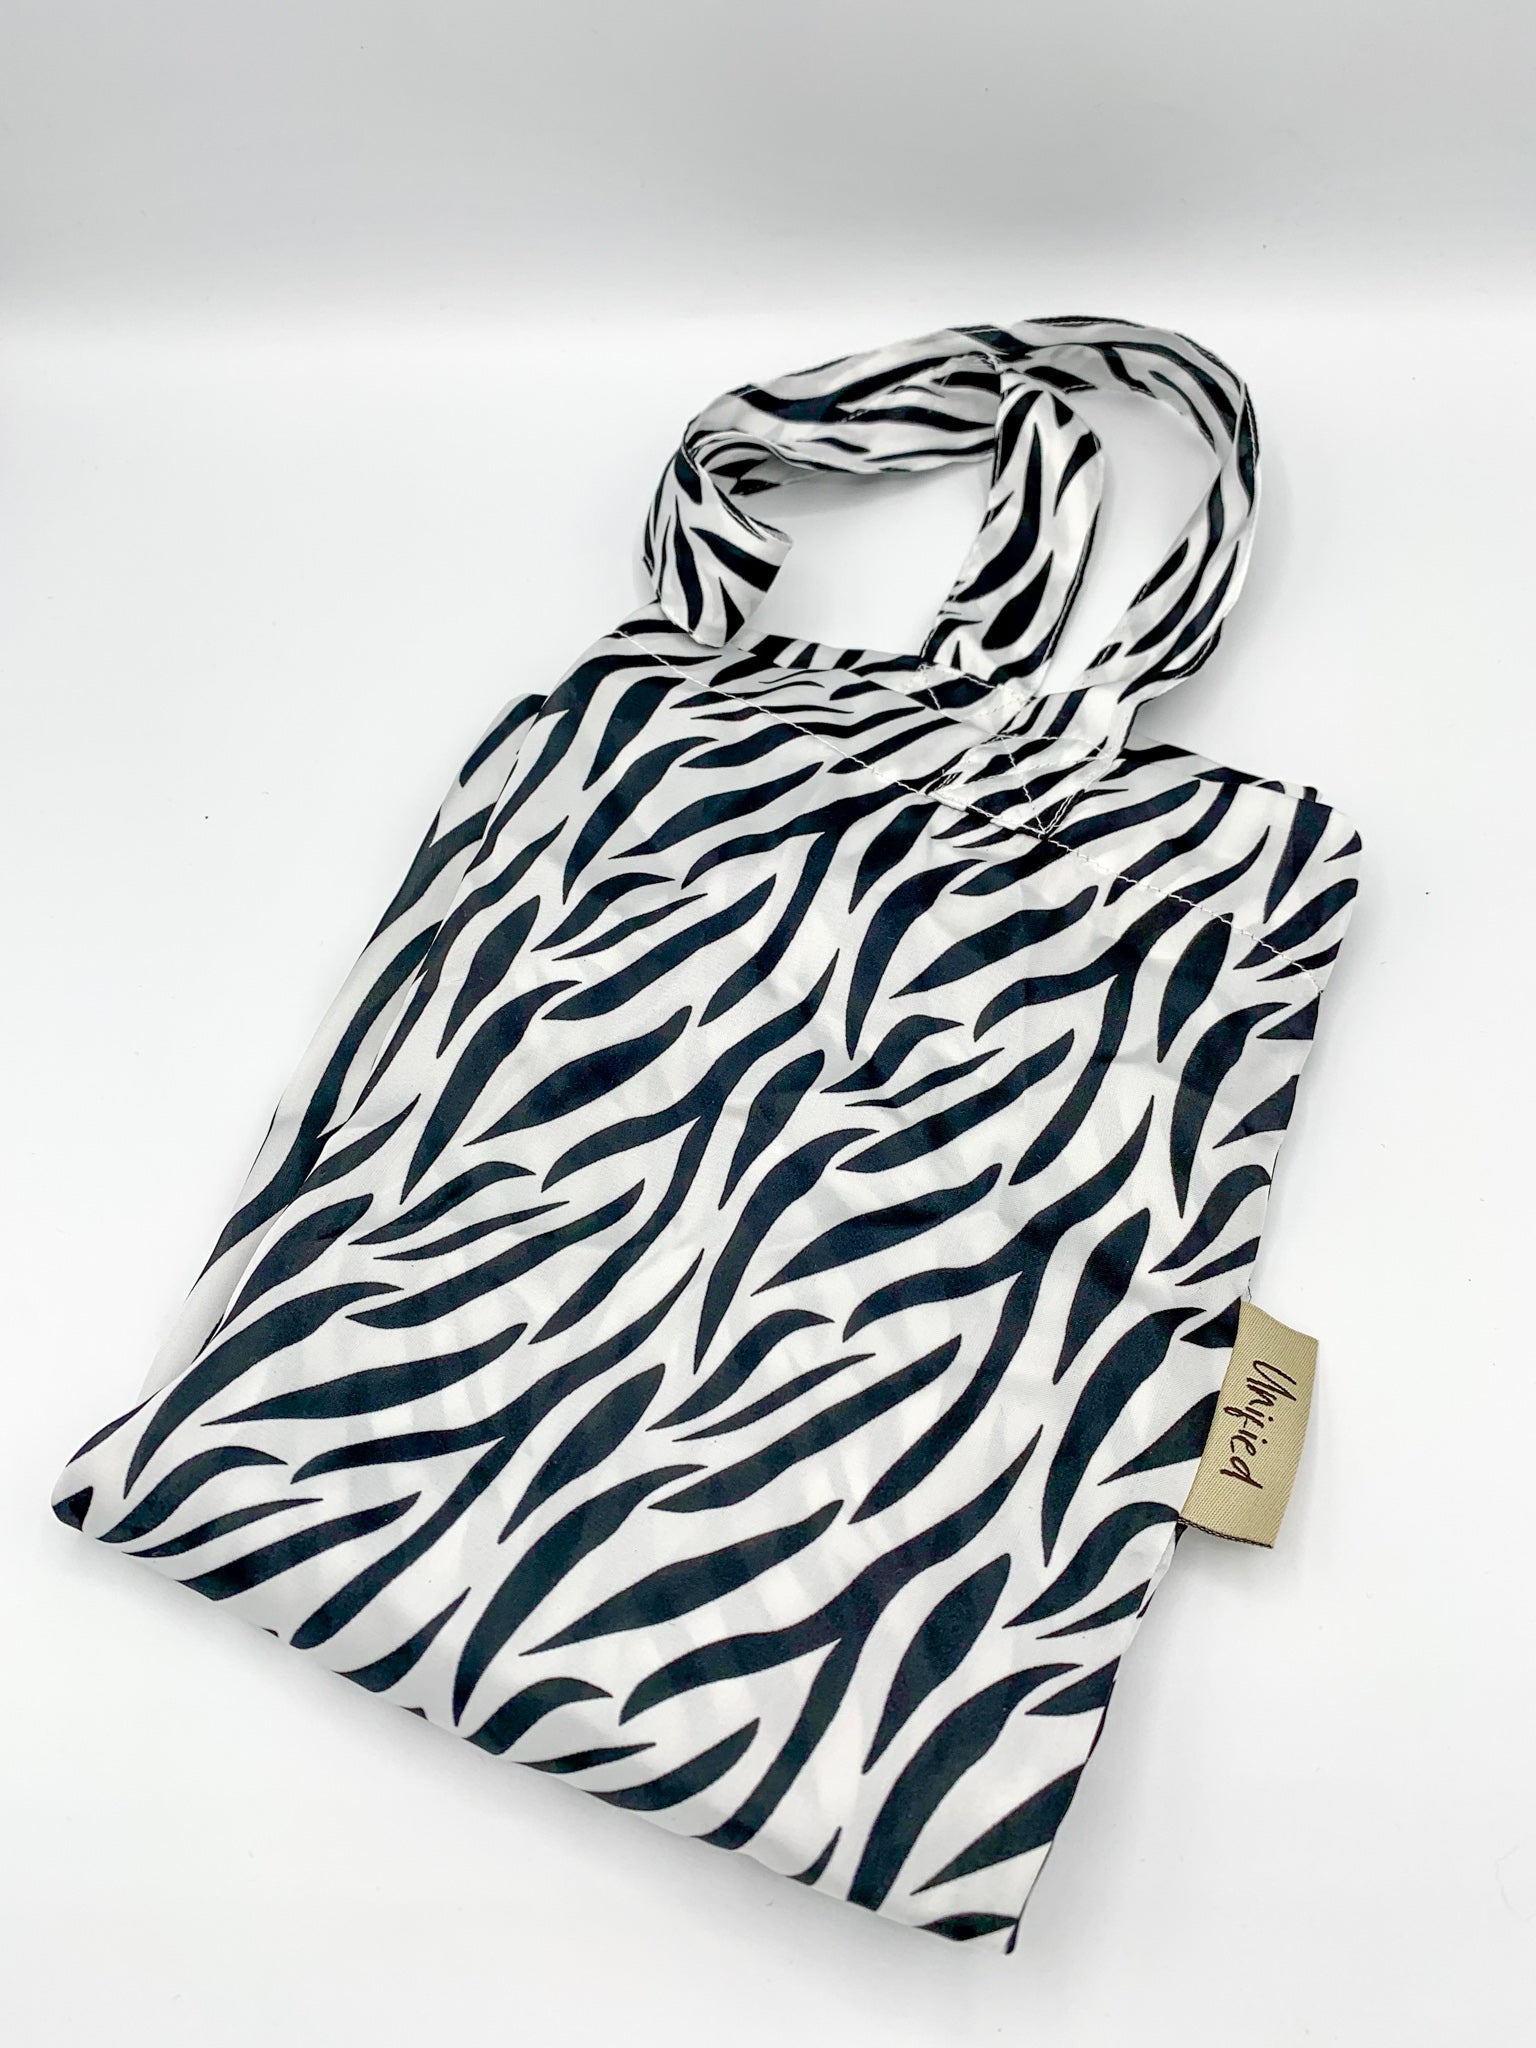 Zebra Print Tote Bag